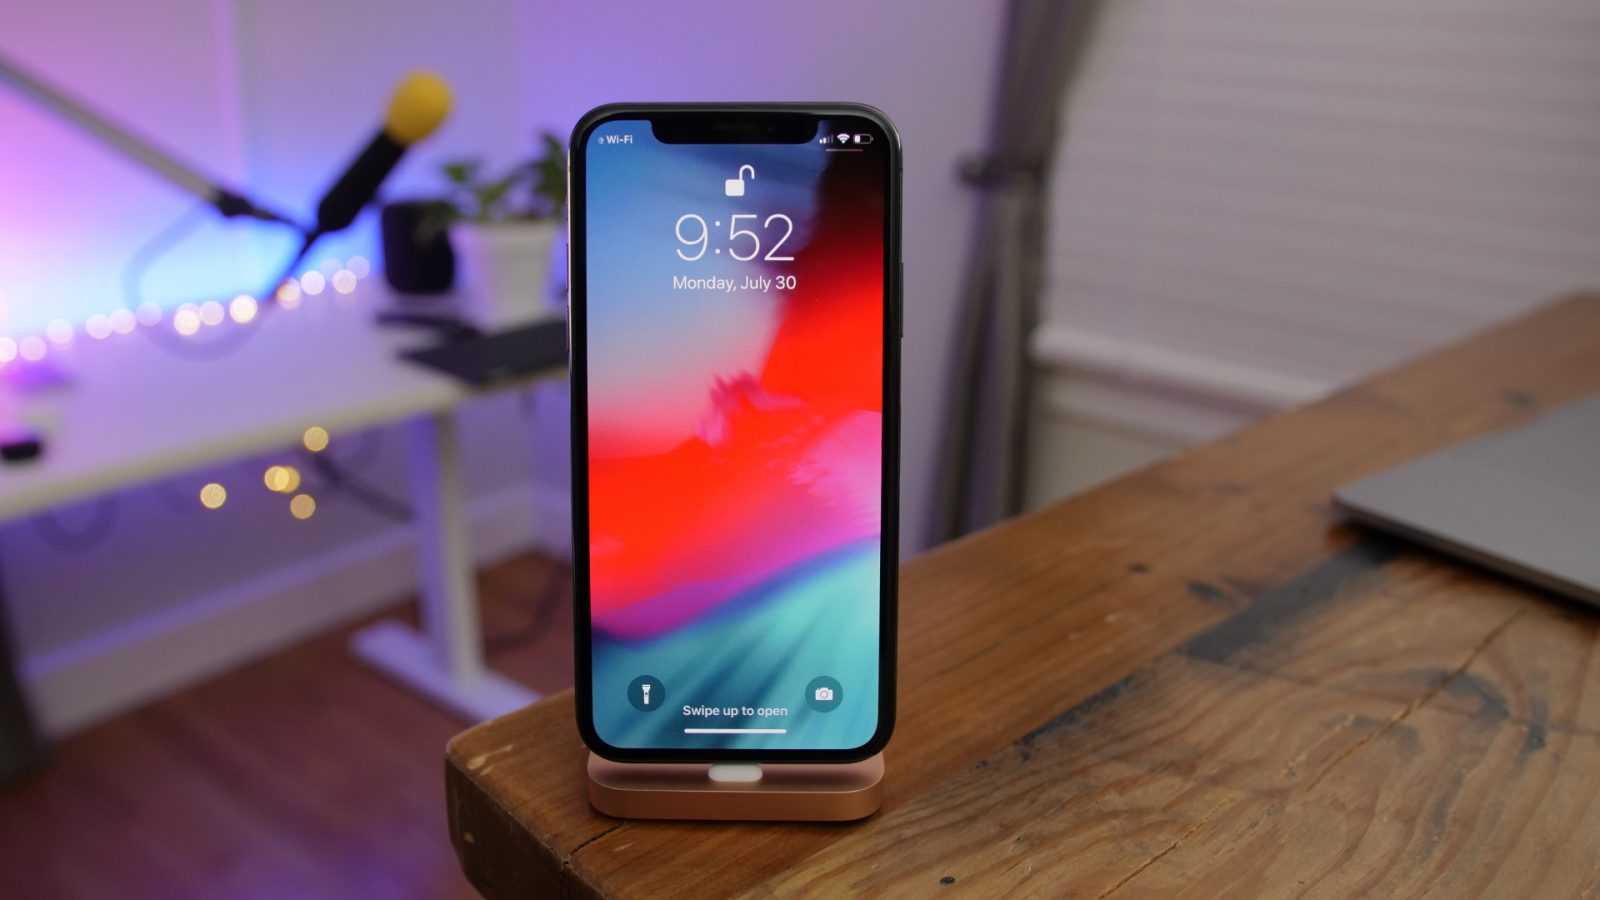 ฝันที่เป็นจริง! iPhone รุ่นใหม่ (2018) อาจรองรับ “2 ซิม”